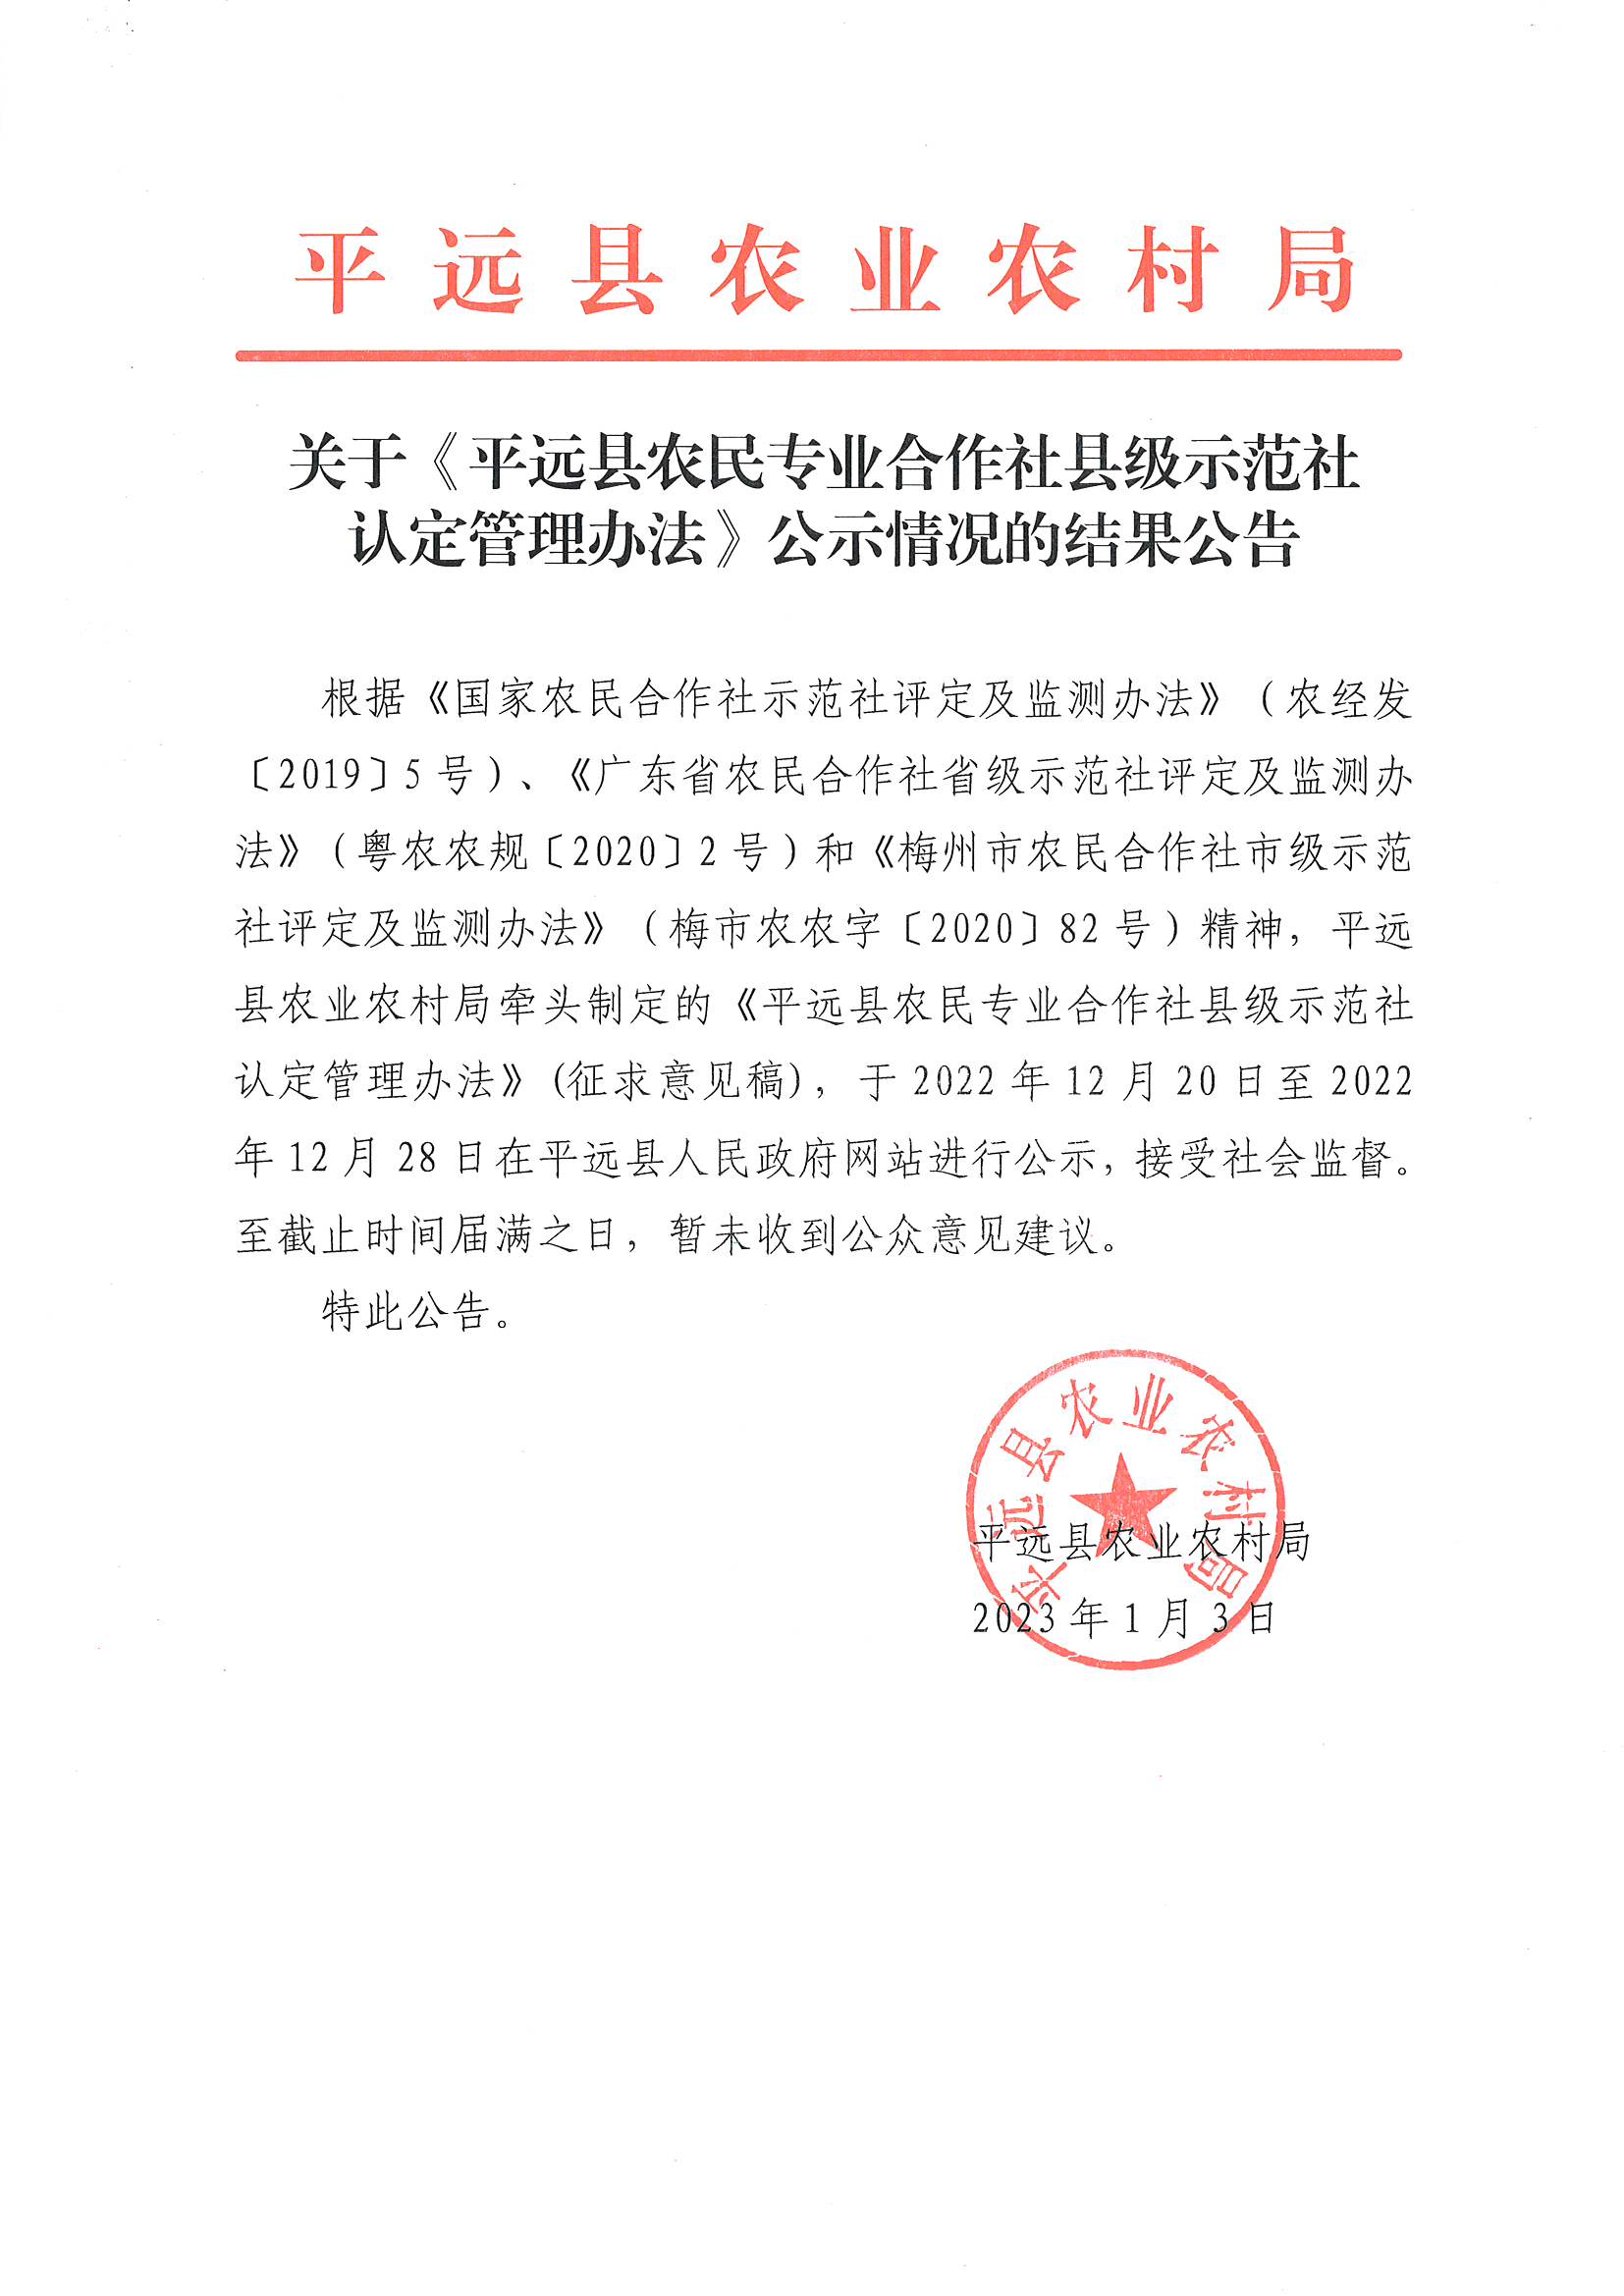 关于平远县农民专业合作社县级示范社认定管理办法公示情况的结果公告.jpg